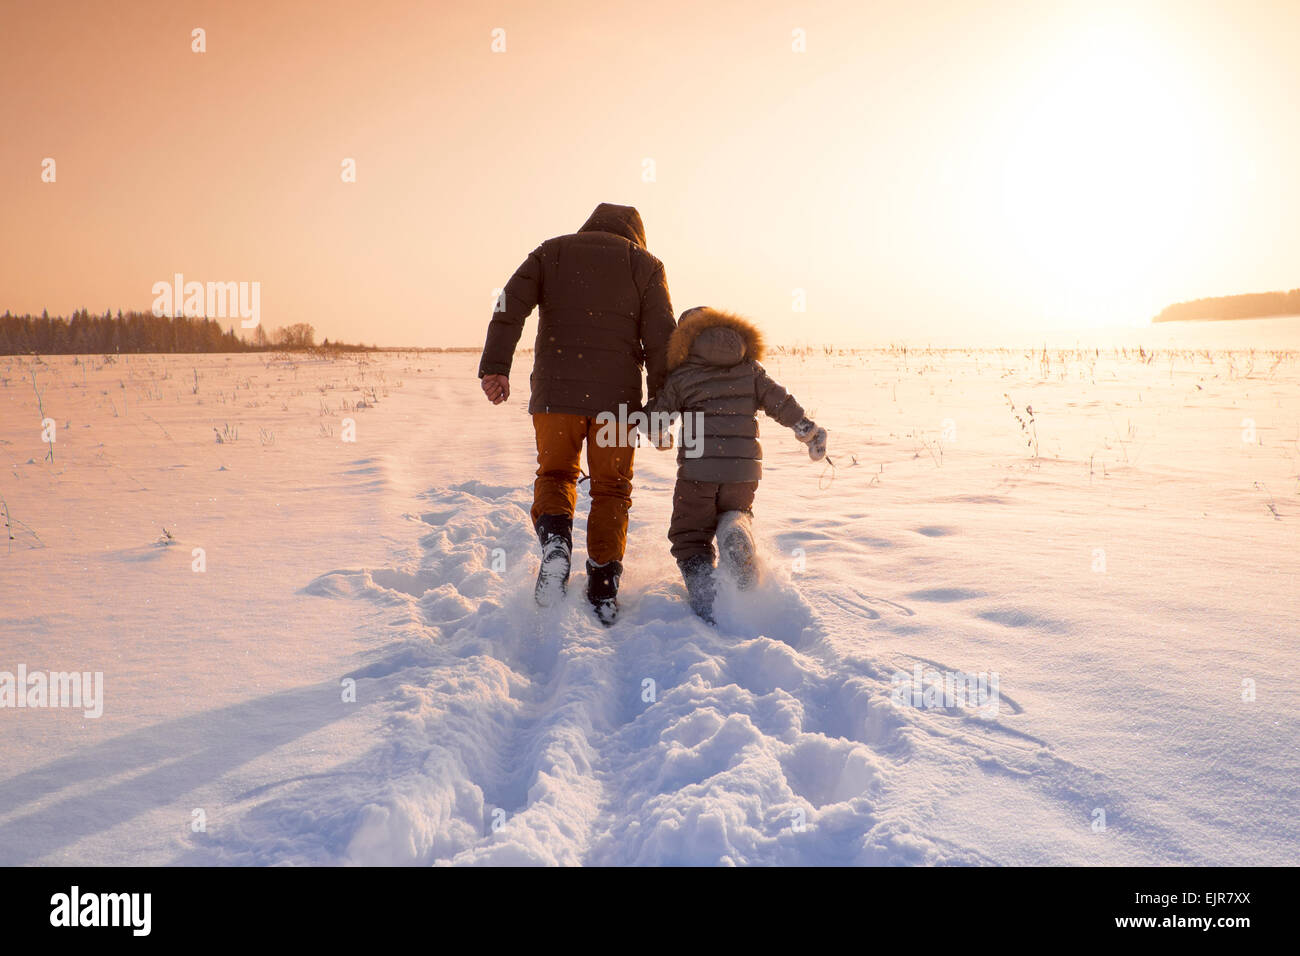 Mari et père fils walking in snowy field Banque D'Images